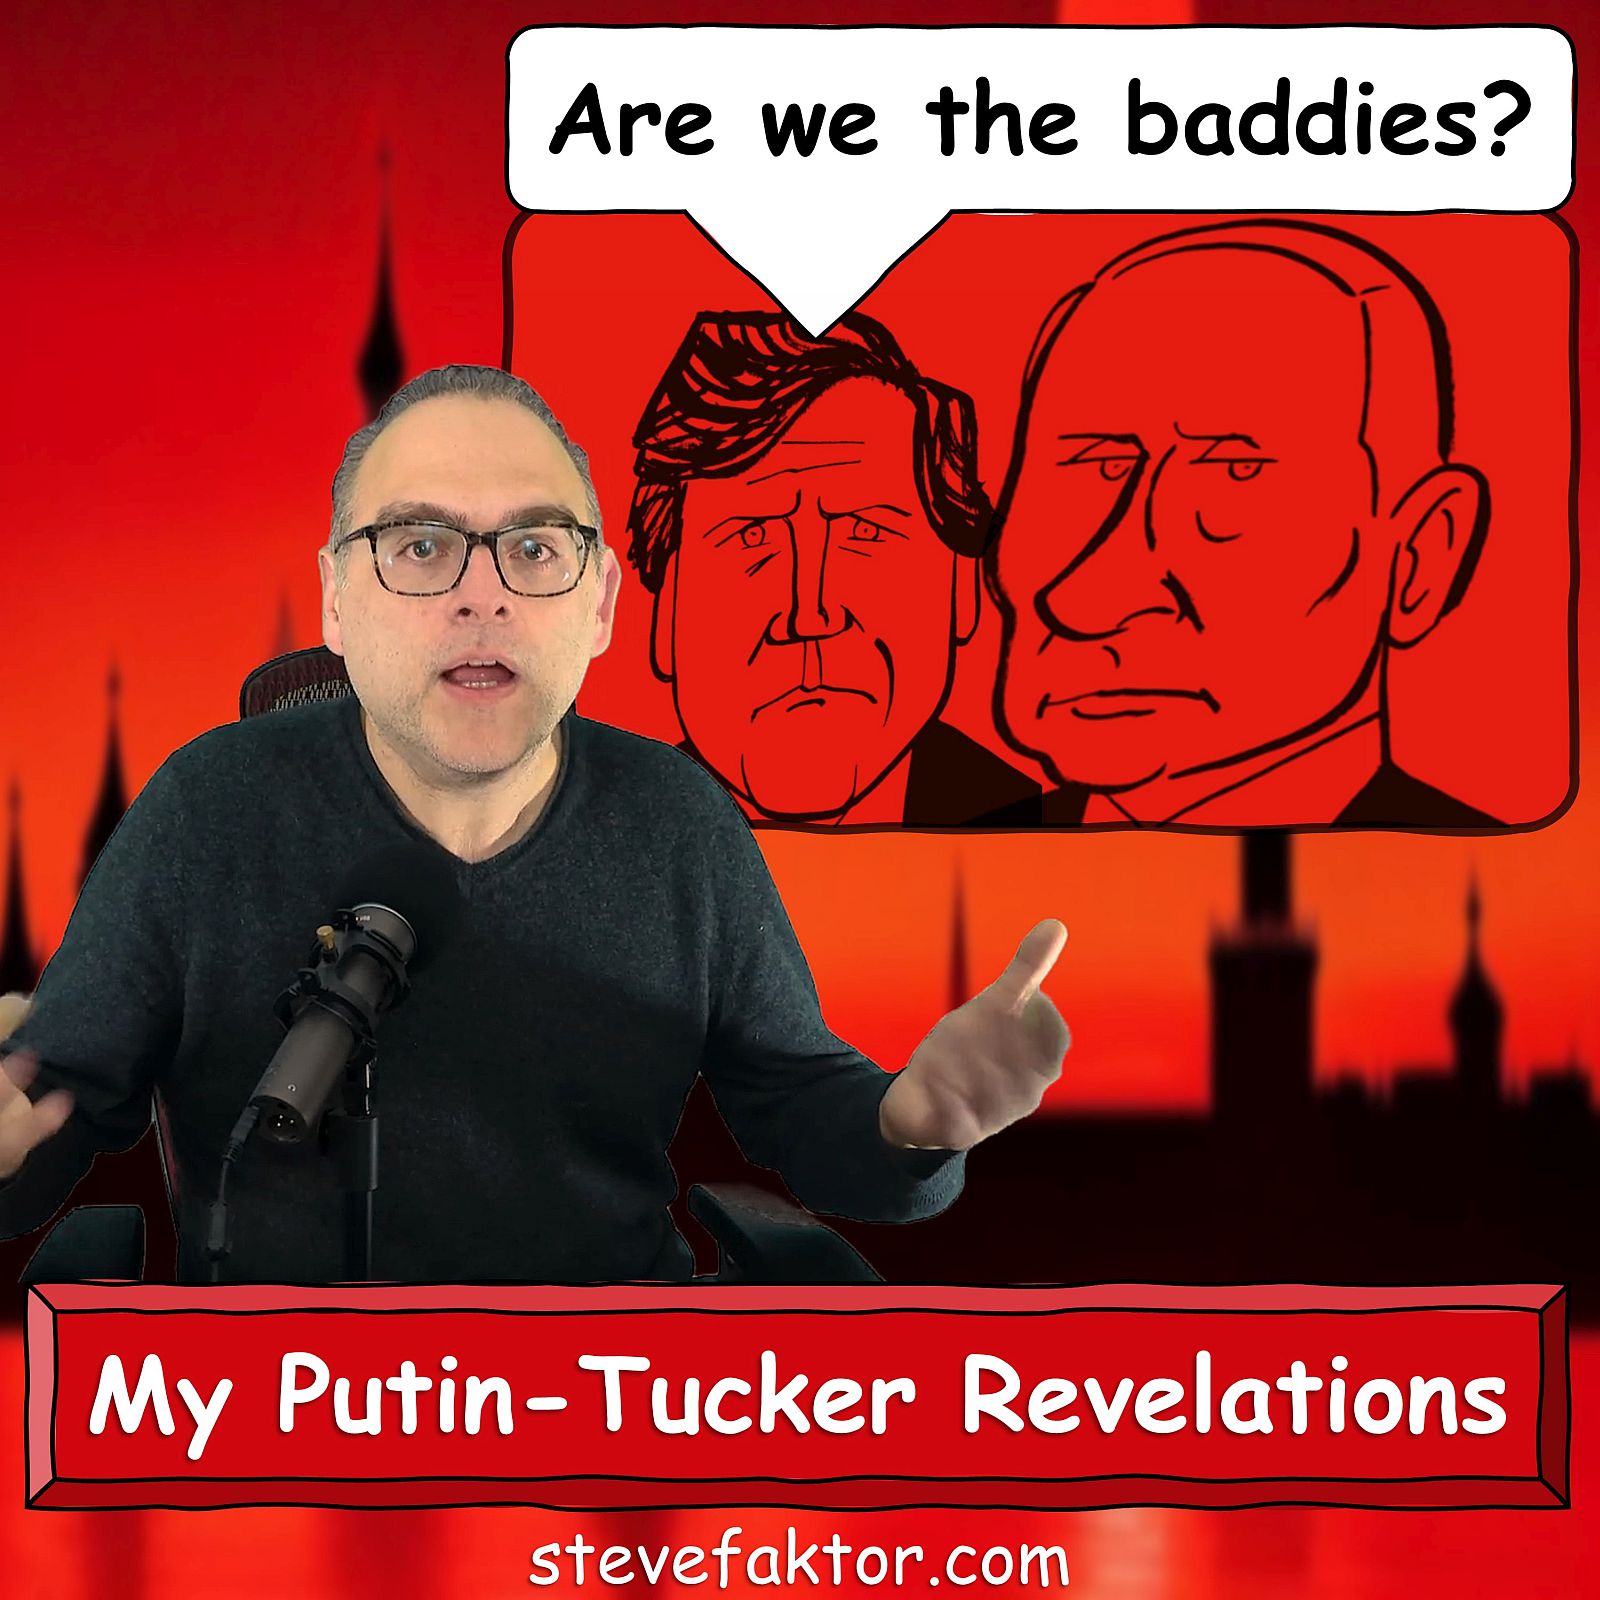 Are We The Baddies? My Putin-Tucker Revelations